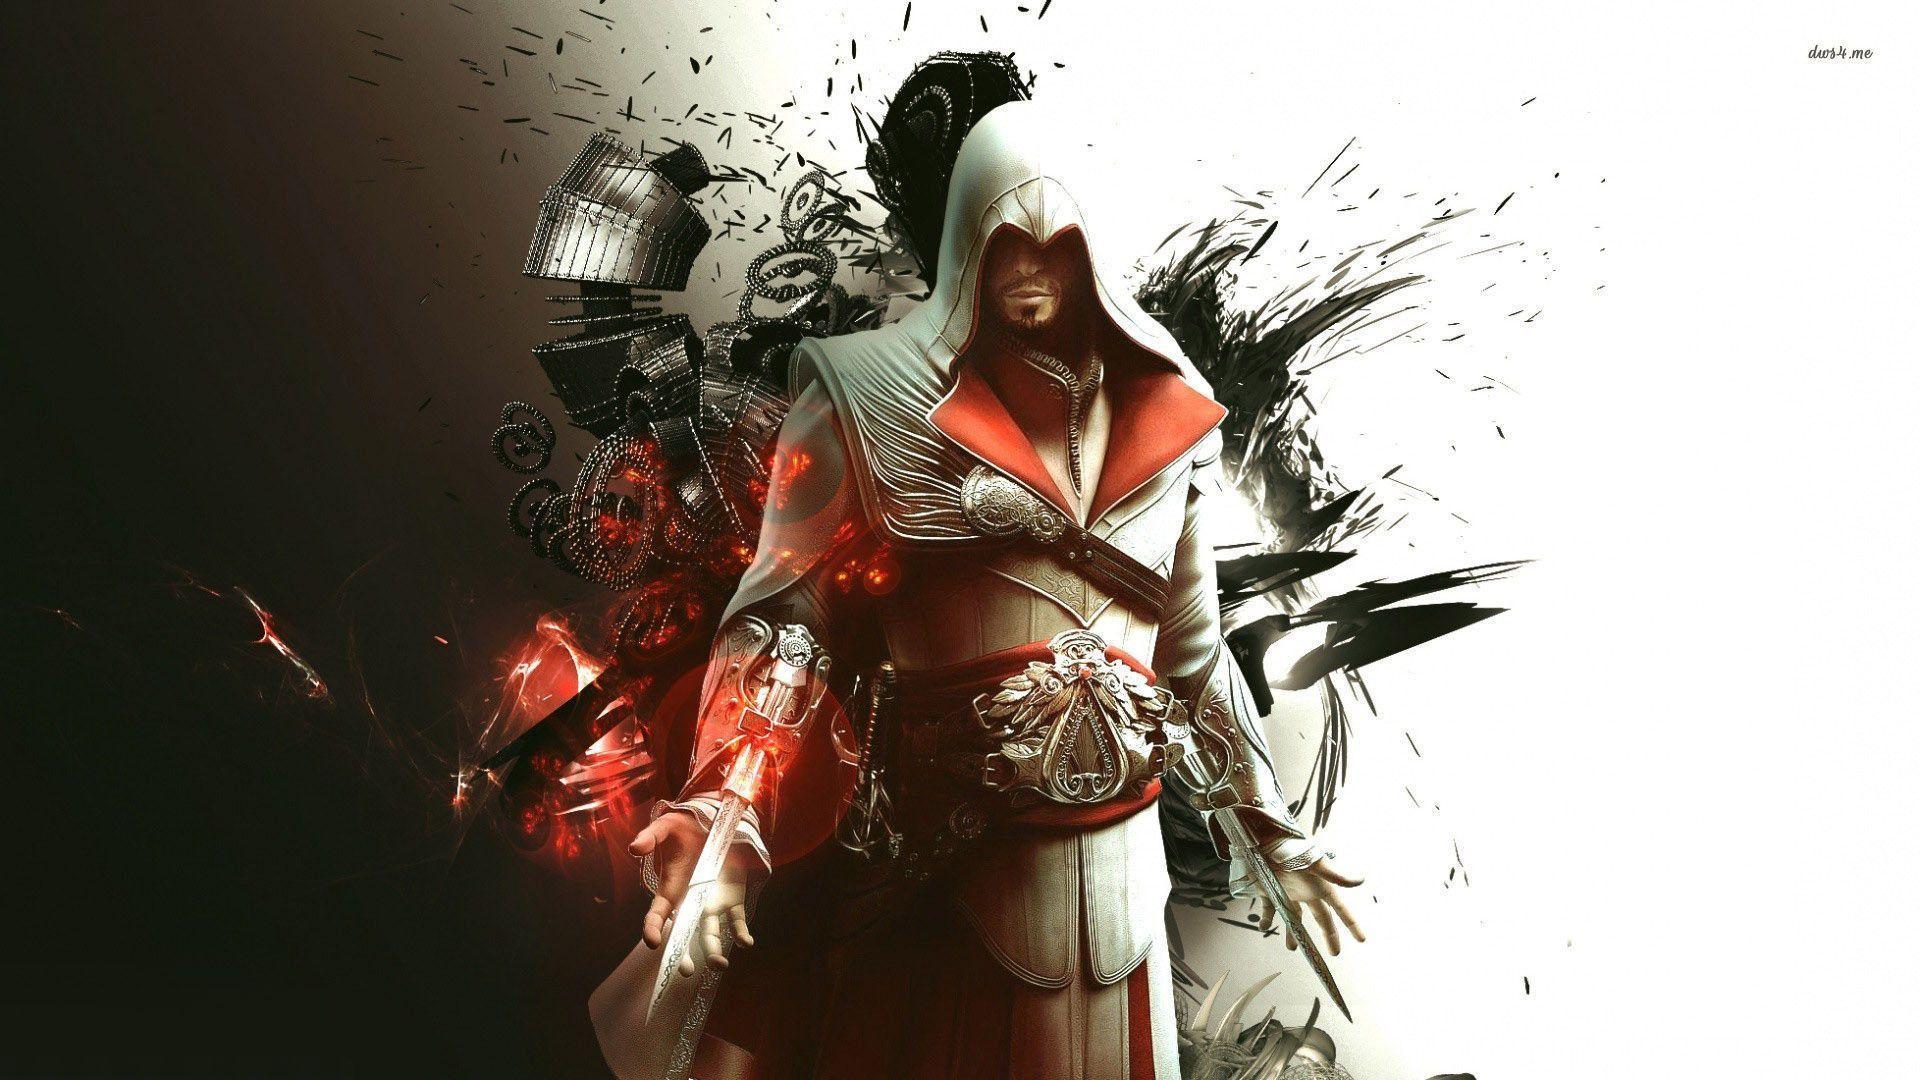 Assassins Creed Brotherhood HD desktop wallpaper Widescreen. HD